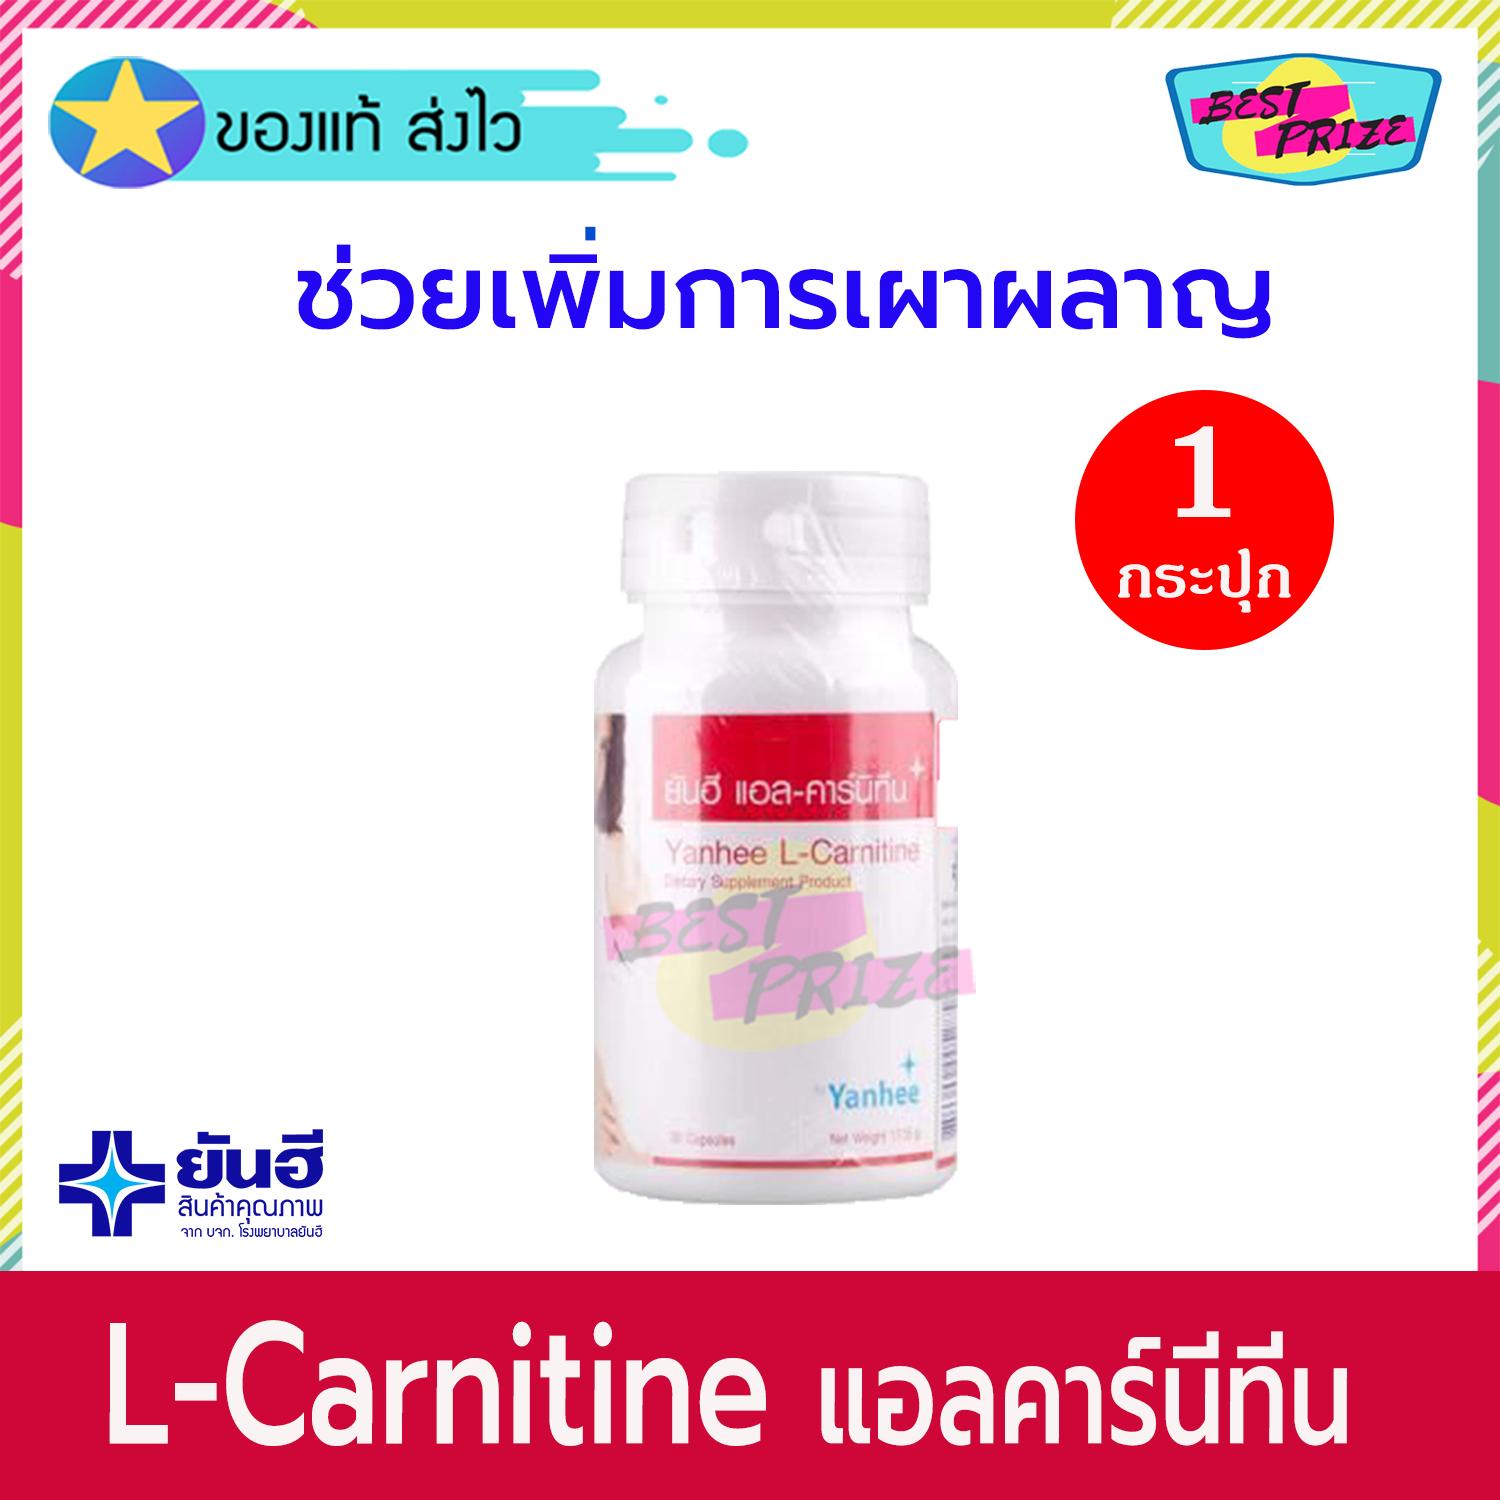 Yanhee L-Carnitine 30 Tablet (จำนวน 1 กระปุก) ยันฮี แอลคาร์นิทีน 30 เม็ด อาหารเสริม อาหารเสริมลดน้ำหนัก ลดน้ำหนัก แอล-คาร์นิทีน